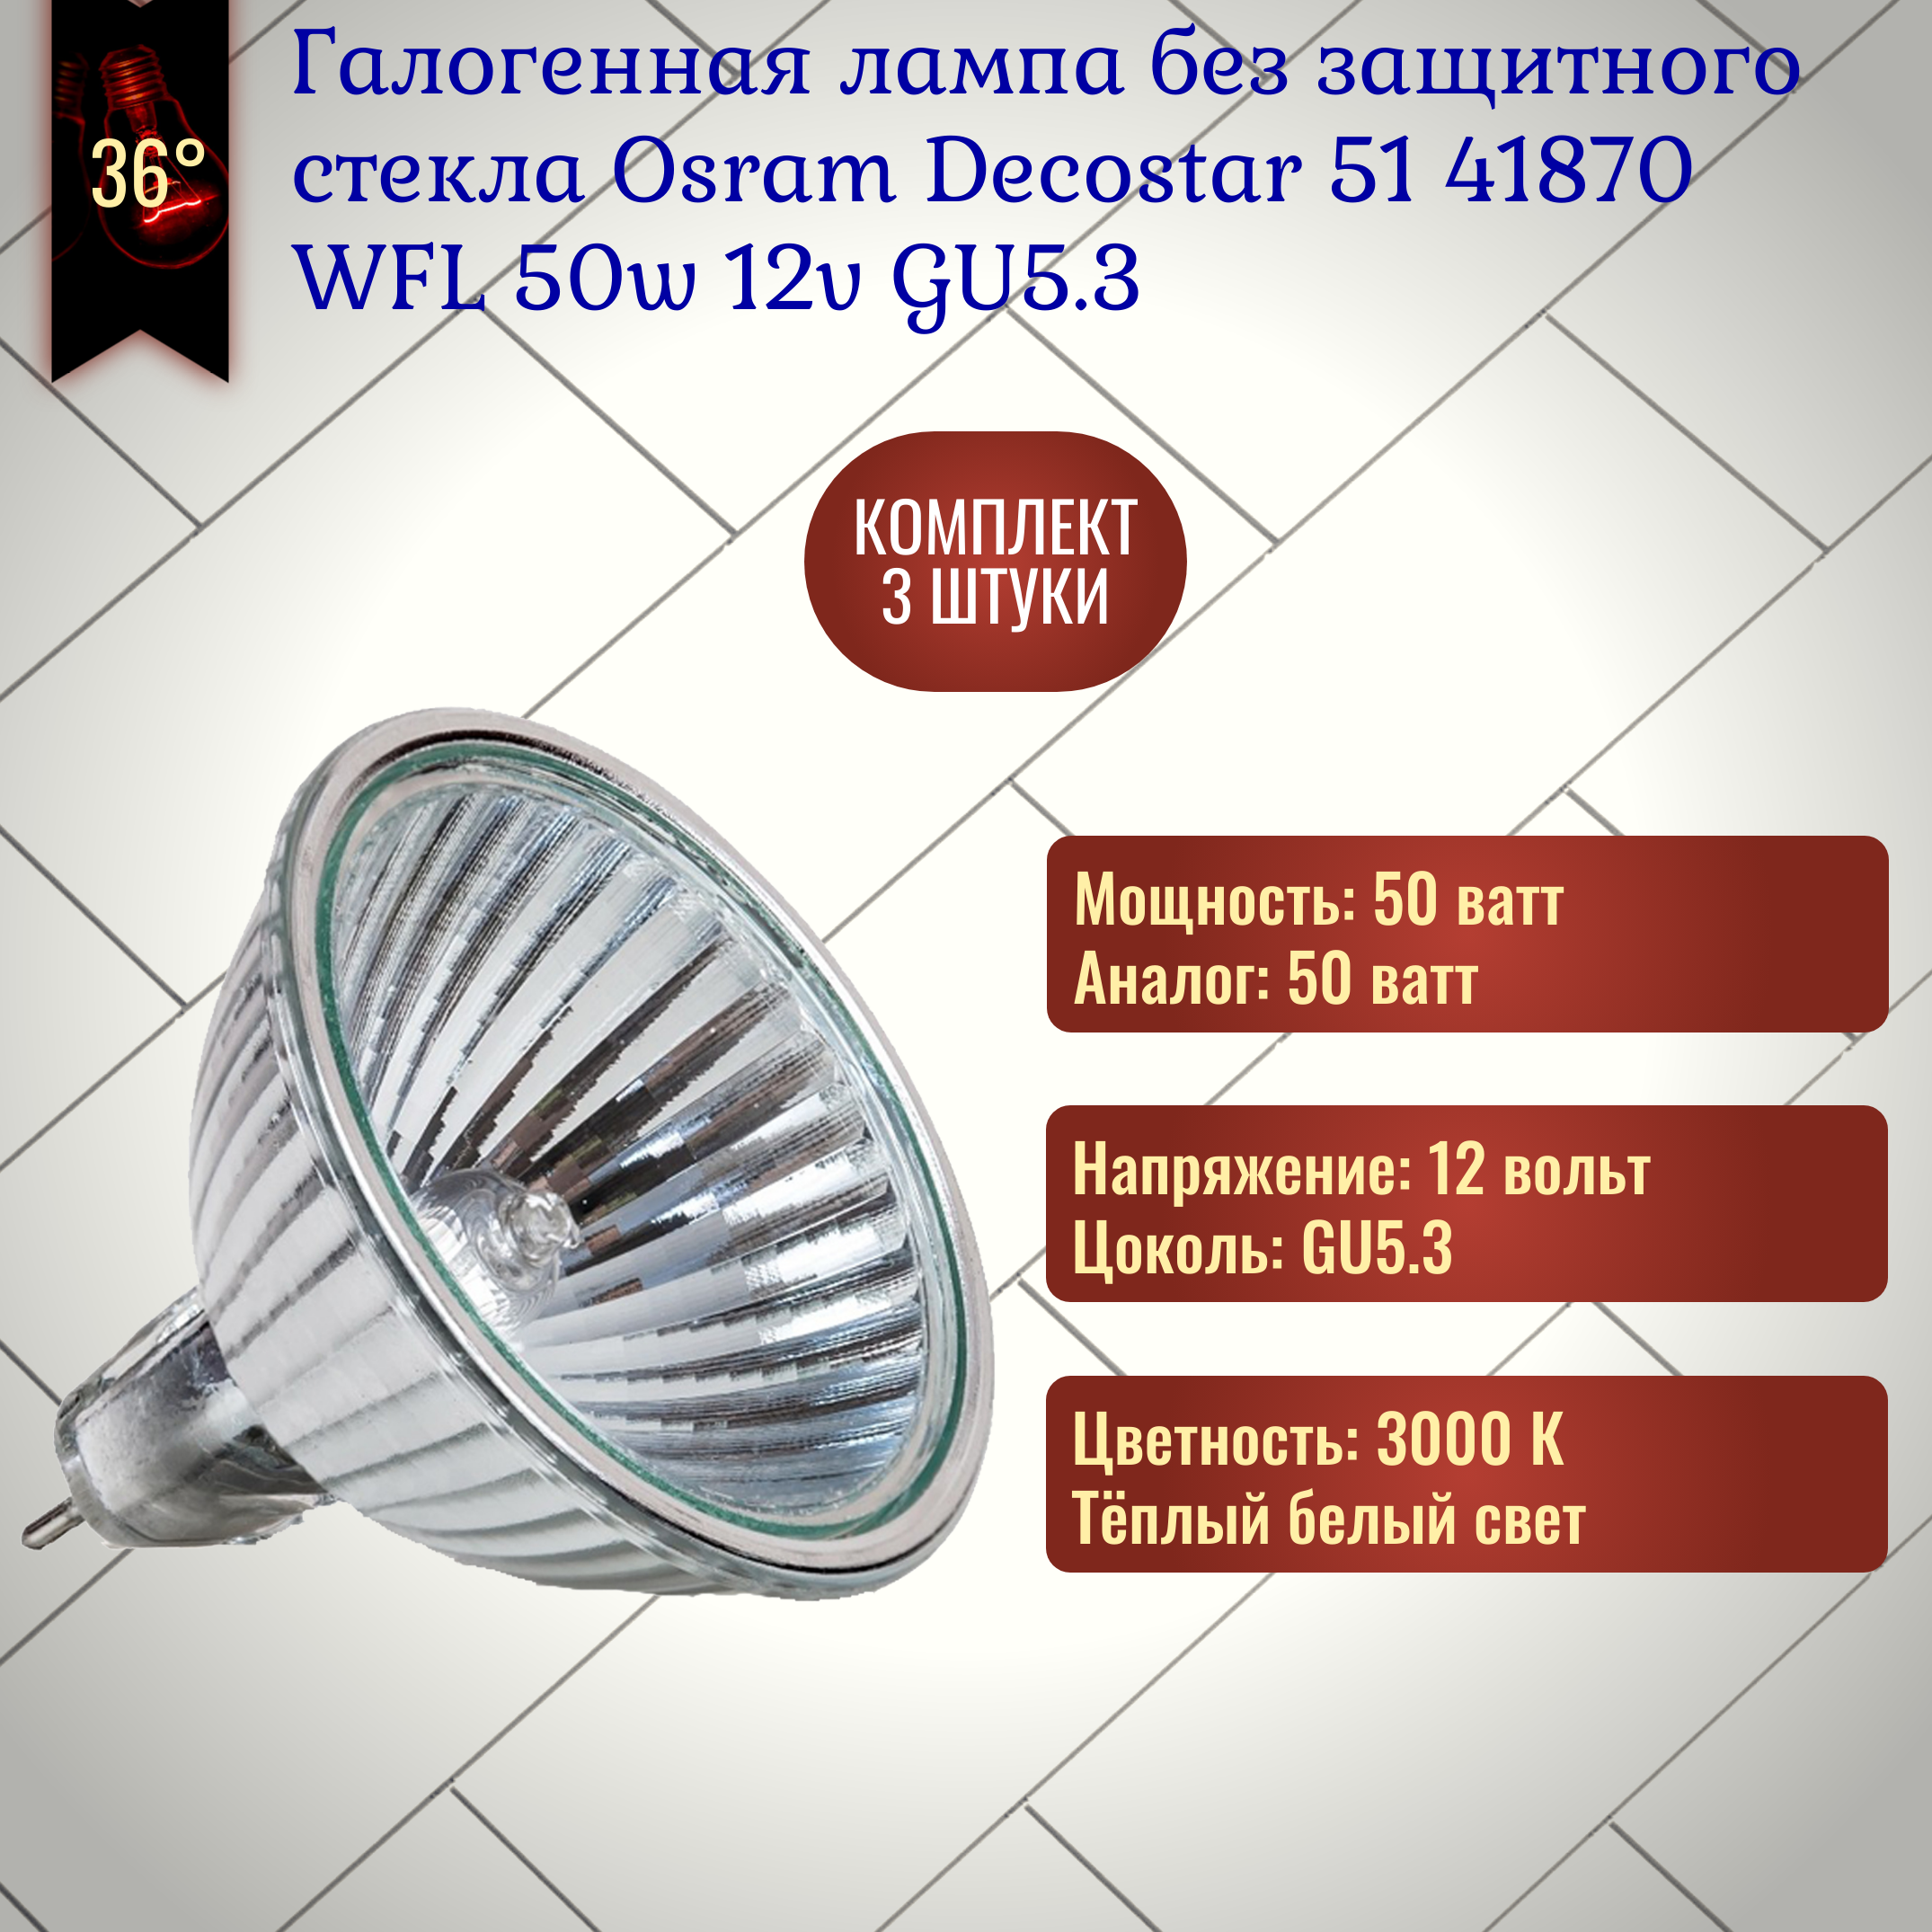 Лампочка Osram Decostar 51 ALU 41870 WFL 50w 12v GU5.3 без защитного стекла, галогенная, теплый белый свет / 3 штуки